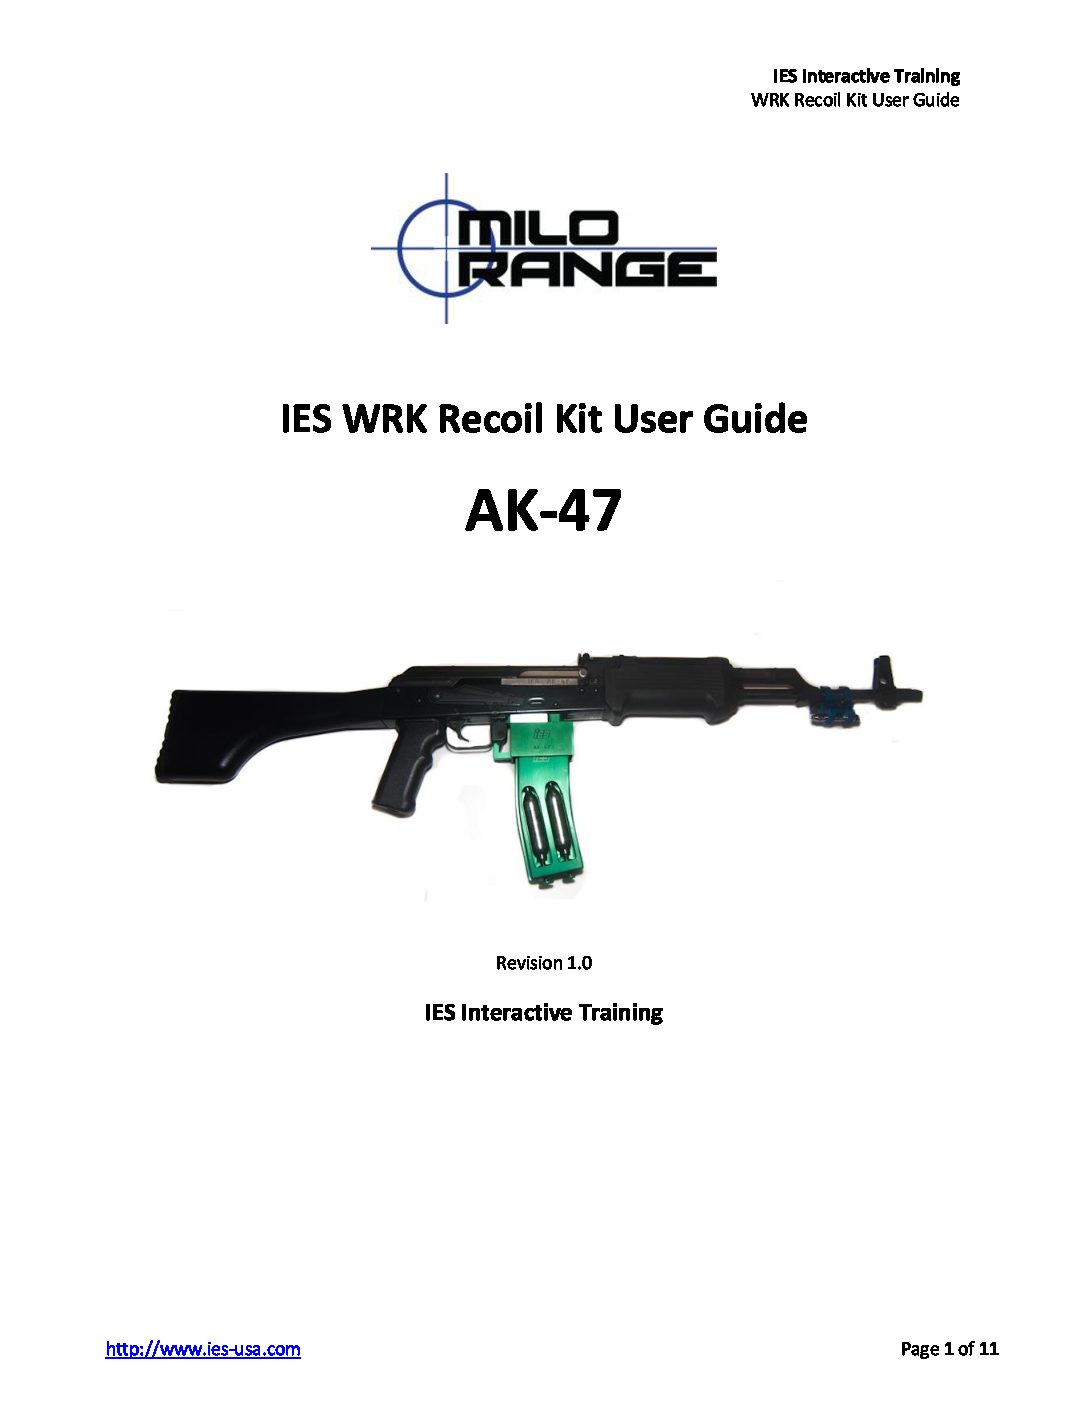 AK-47 WRK Recoil Kit User Guide